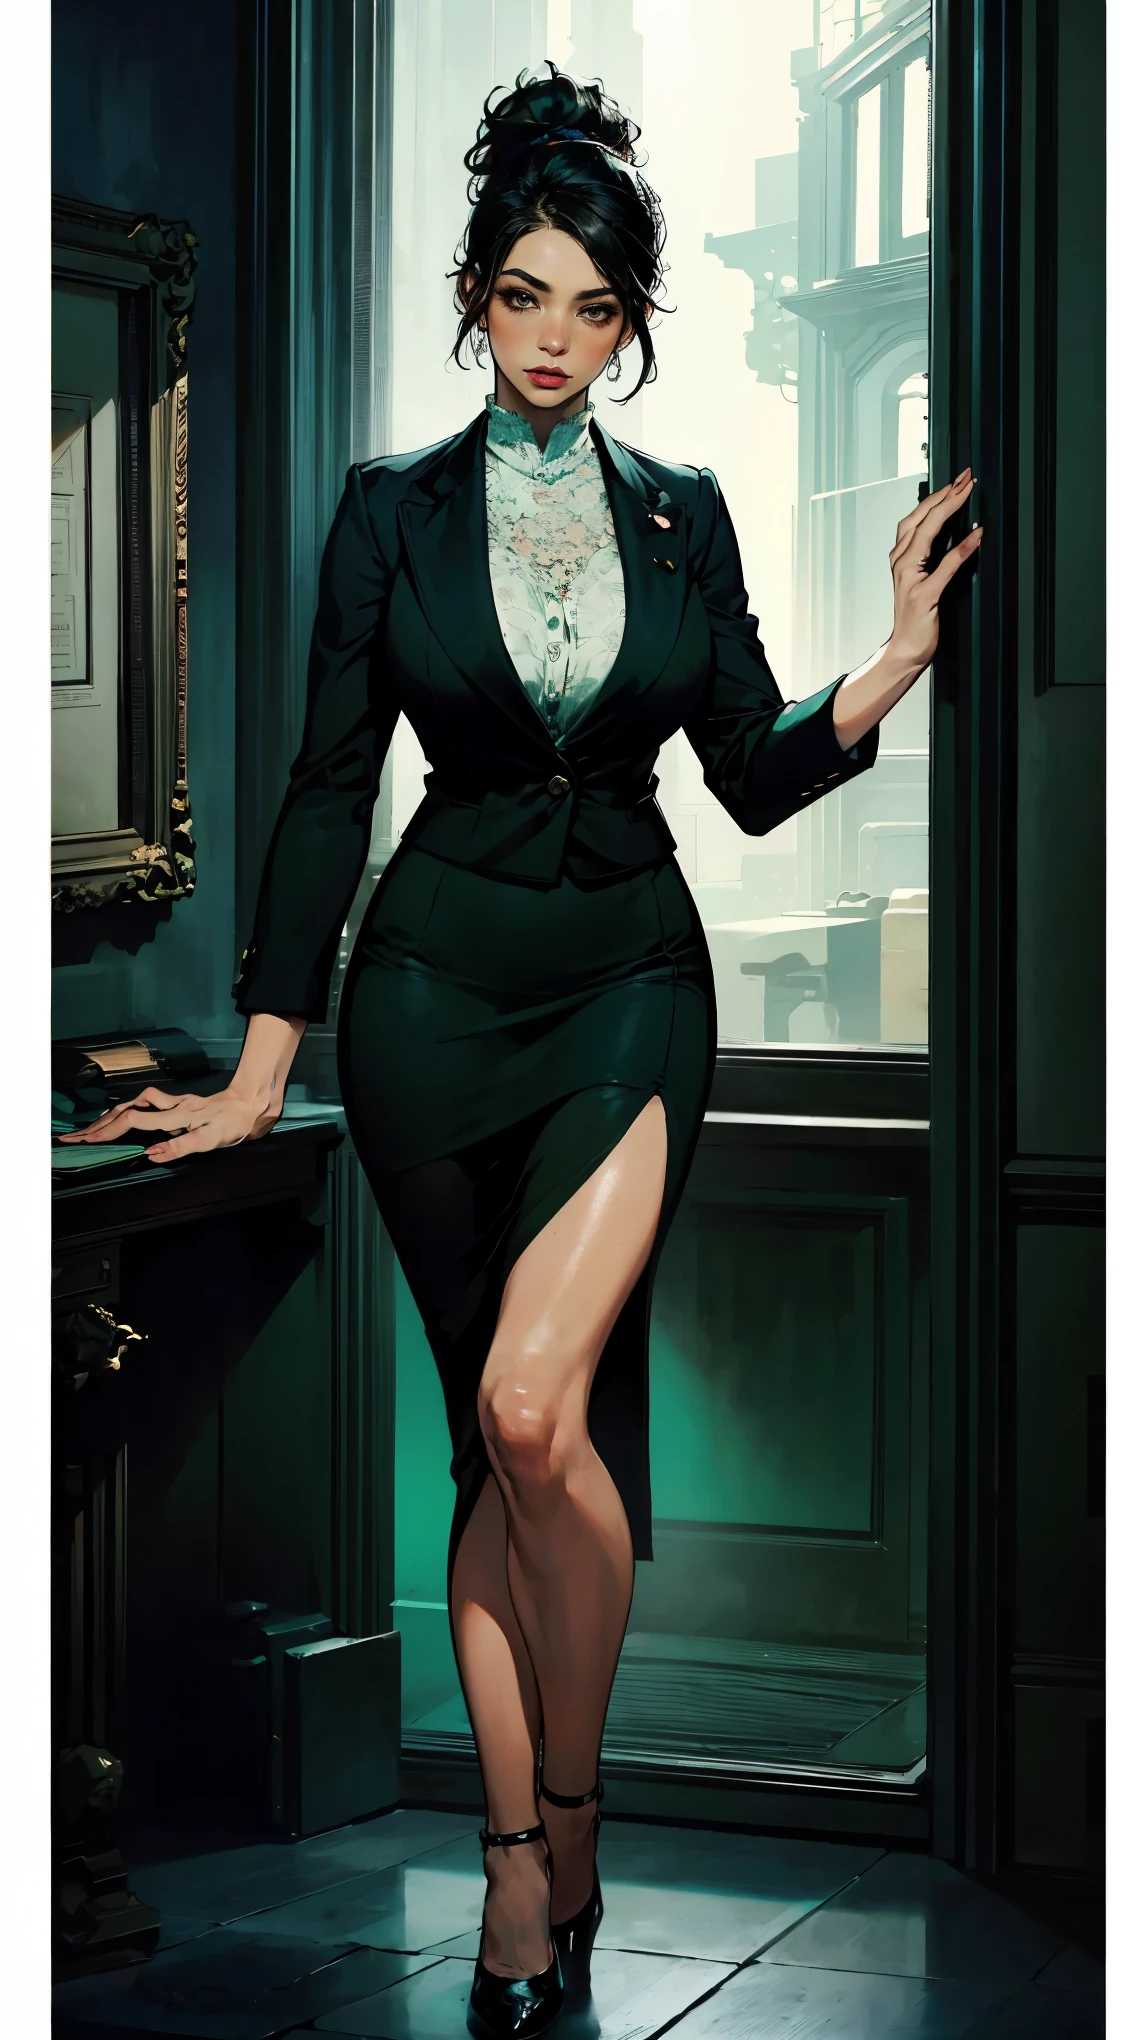 (Лучшее качество, 4K, Высокое разрешение, шедевр:1.2), ультрадетализированный, реалистичный (photo-реалистичный:1.37), 34 года, Японская офисная дама, (темно-зеленый пиджак поверх белоснежной блузки и темно-зеленая короткая юбка-карандаш с разрезом спереди.), черные волосы, собранные в хвост, черные каблуки, идеальный макияж, грудь чашки C, Подтянутое стройное тело, плоский пресс, тело песочных часов, поза приветствия клиента, банковский фон. острый фокус на деталях, Современная среда, поразительное визуальное воздействие, уверенно уравновешенный, аура профессионализма, символ надежности, элитный образ жизни, необыкновенная харизма.
